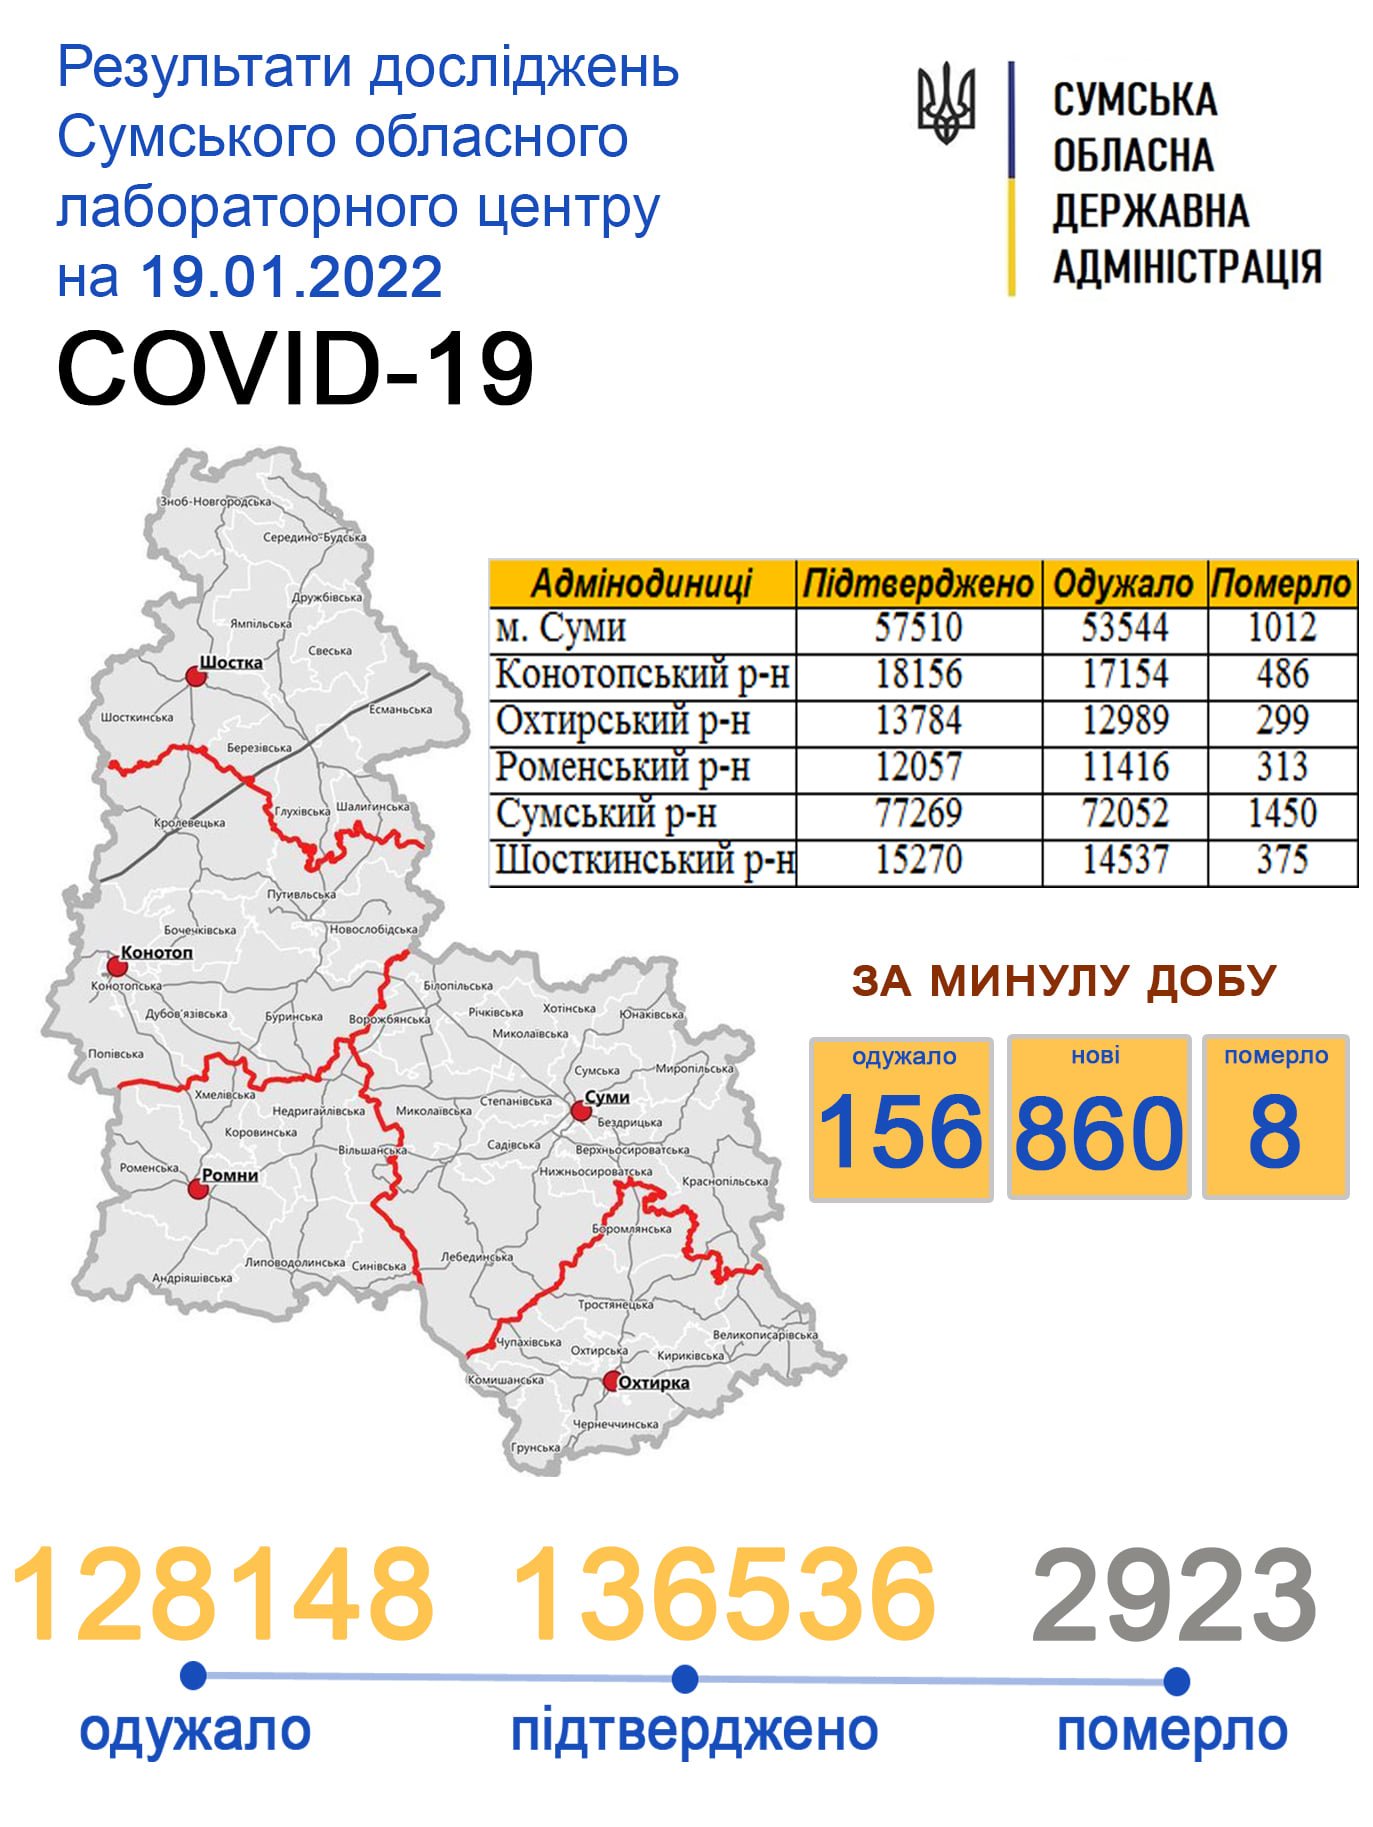     covid-19  860 